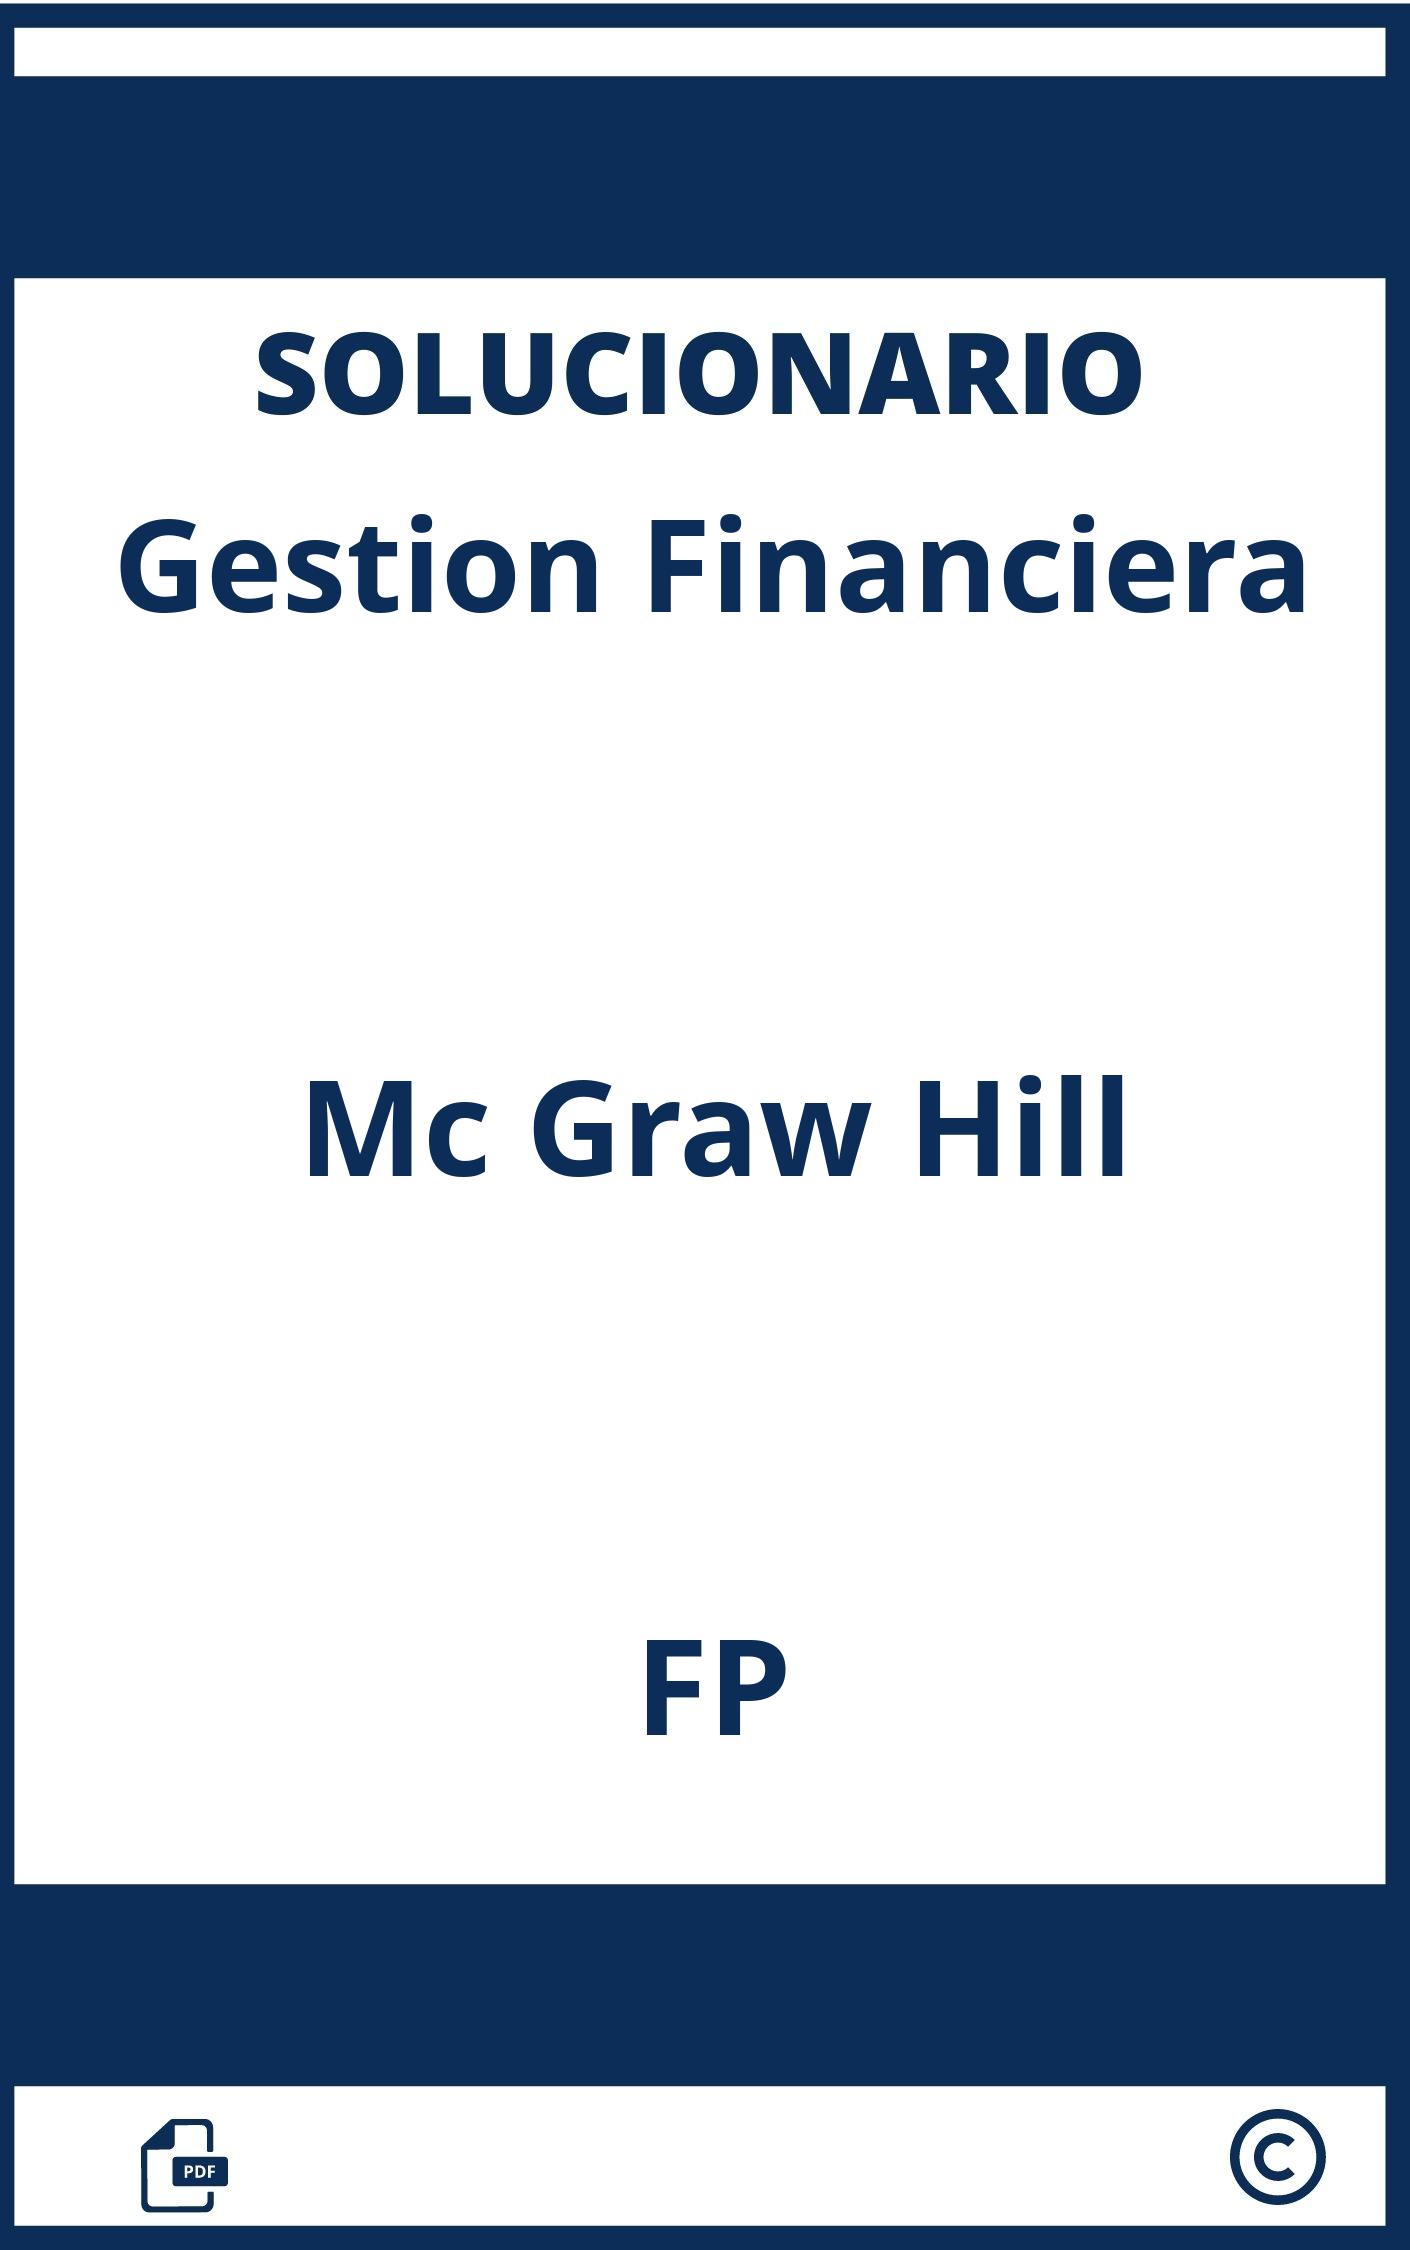 Solucionario Gestion Financiera Mc Graw Hill Pdf